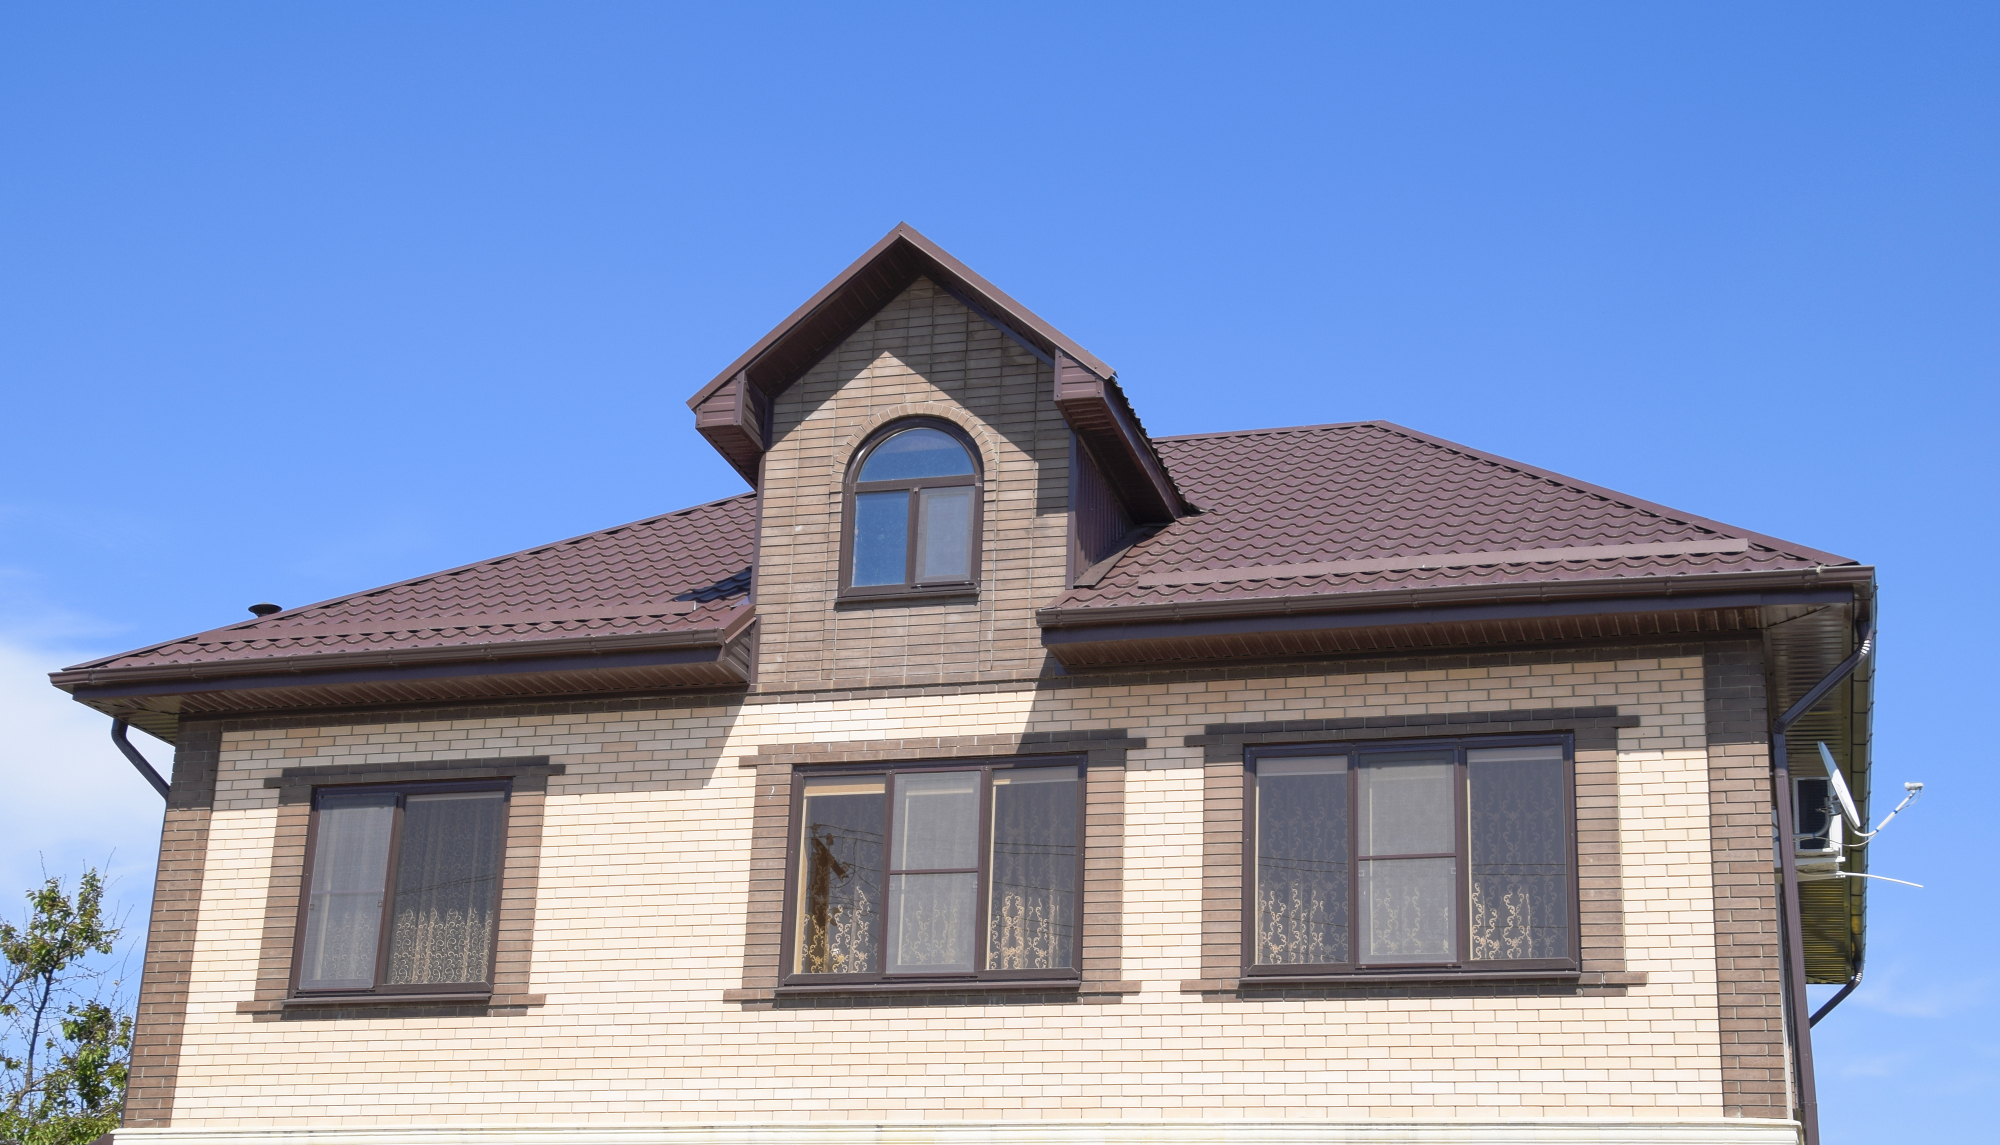 Streha je potrebna na prav vsaki stavbi oziroma hiši